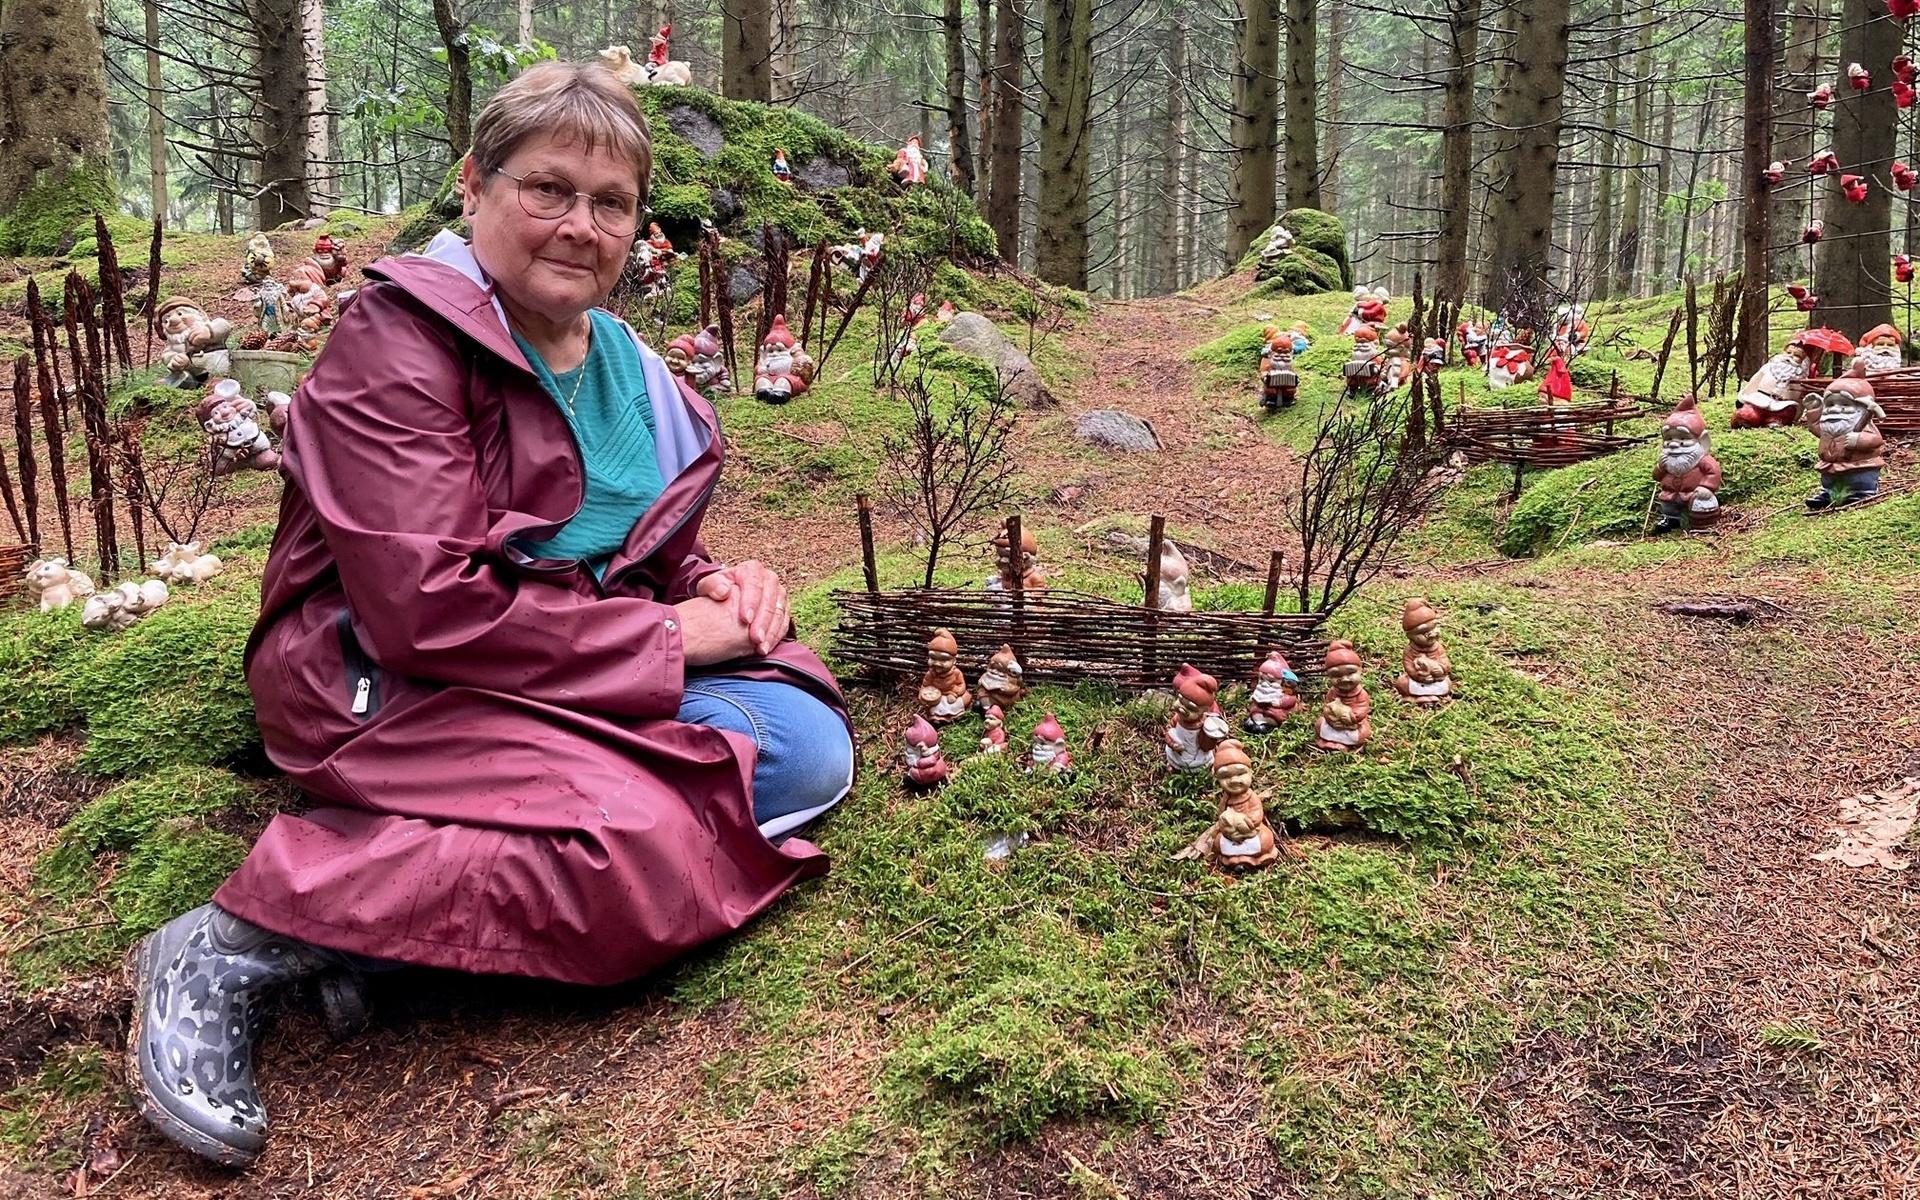 Det började med tre troll för att väcka besökarnas nyfikenhet. I dag har Ann-Christine Gustavsson tusentals små figurer utplacerade på sin skogspromenad Trollrundan i Fågelsång utanför Våxtorp.